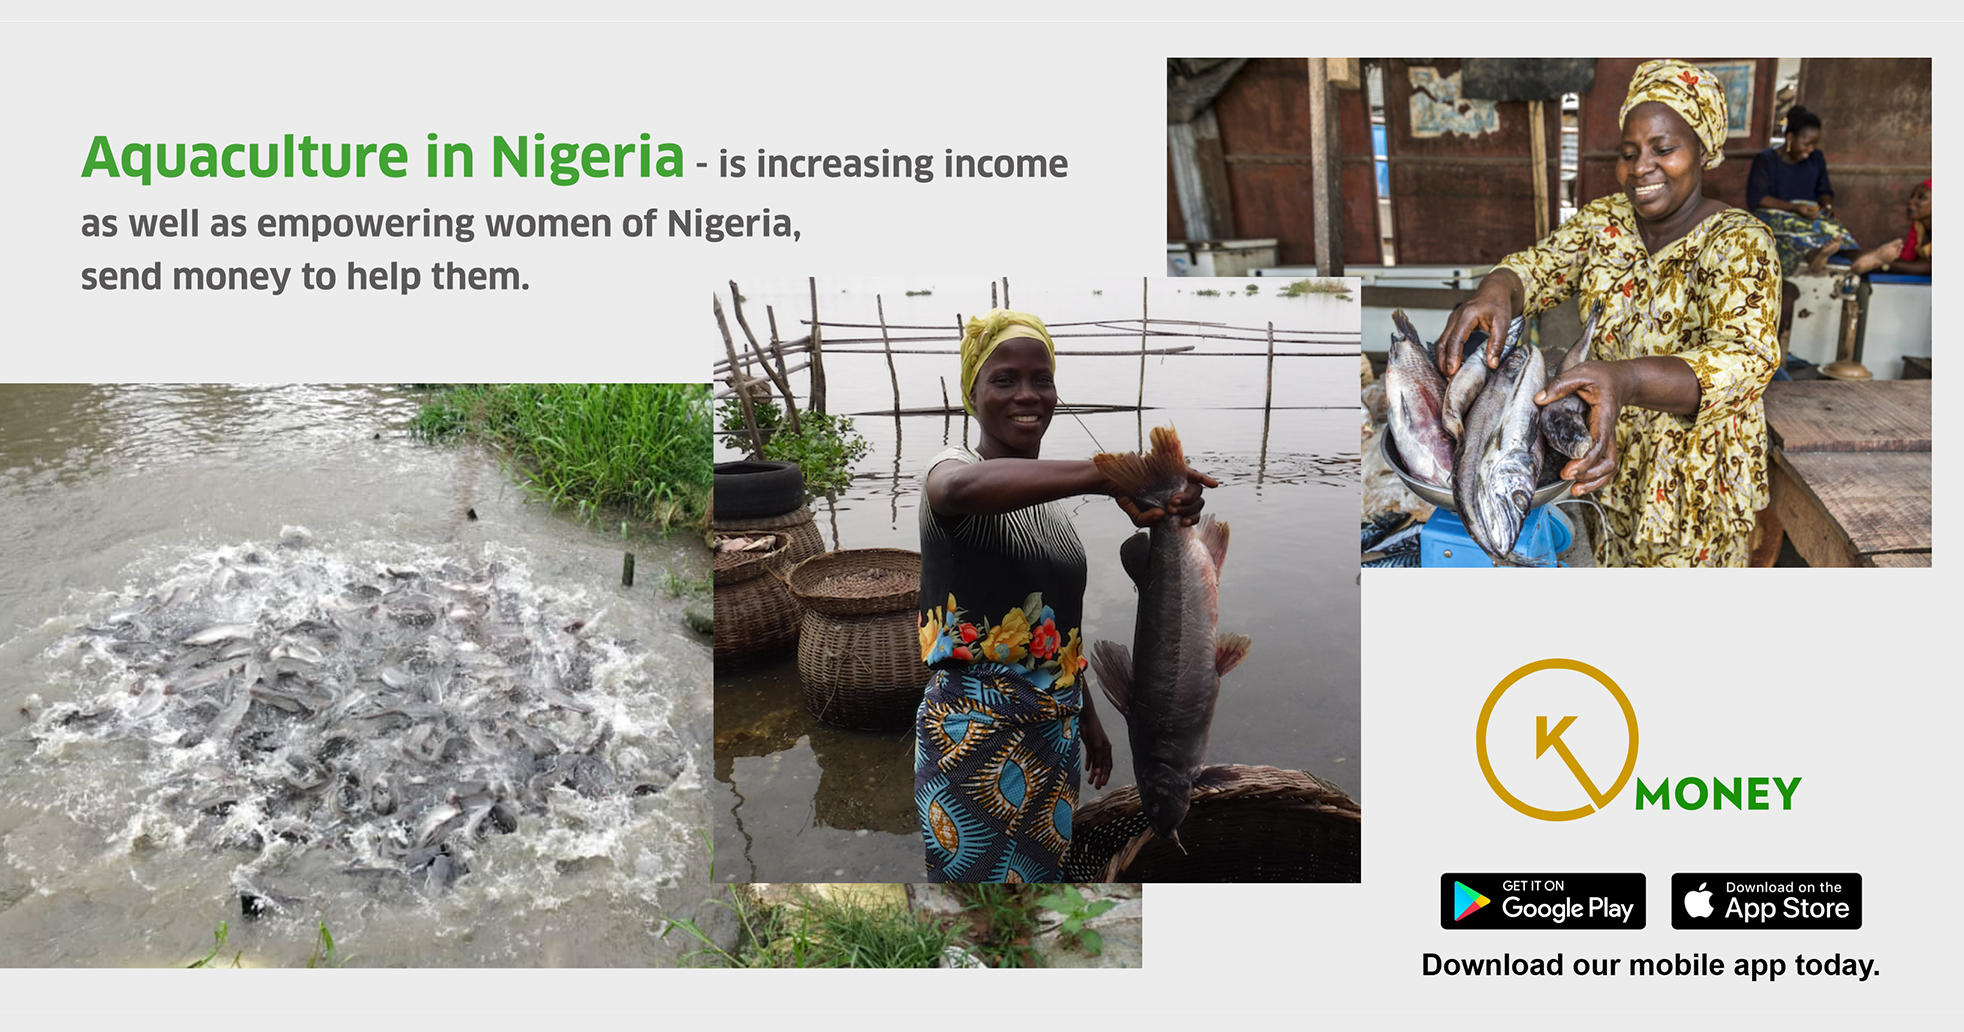 Aquaculture in Nigeria